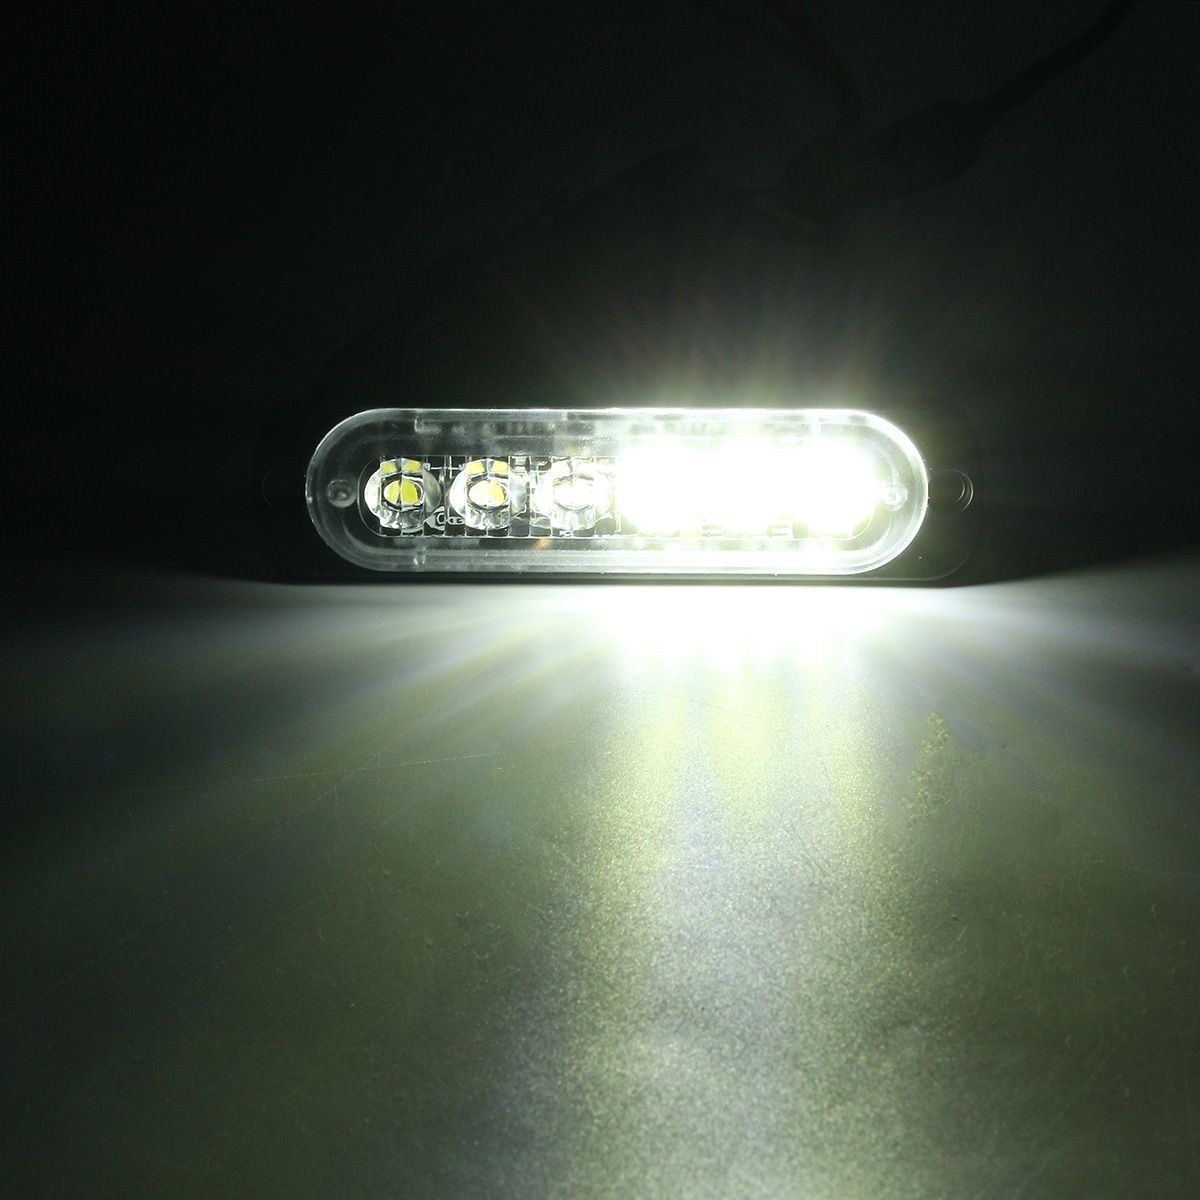 18W-6-LED-Car-Strobe-Lights-Bar-12V-24V-Emergency-Warning-Flashing-Lamp-AmberWhiteAmberWhite-1099465